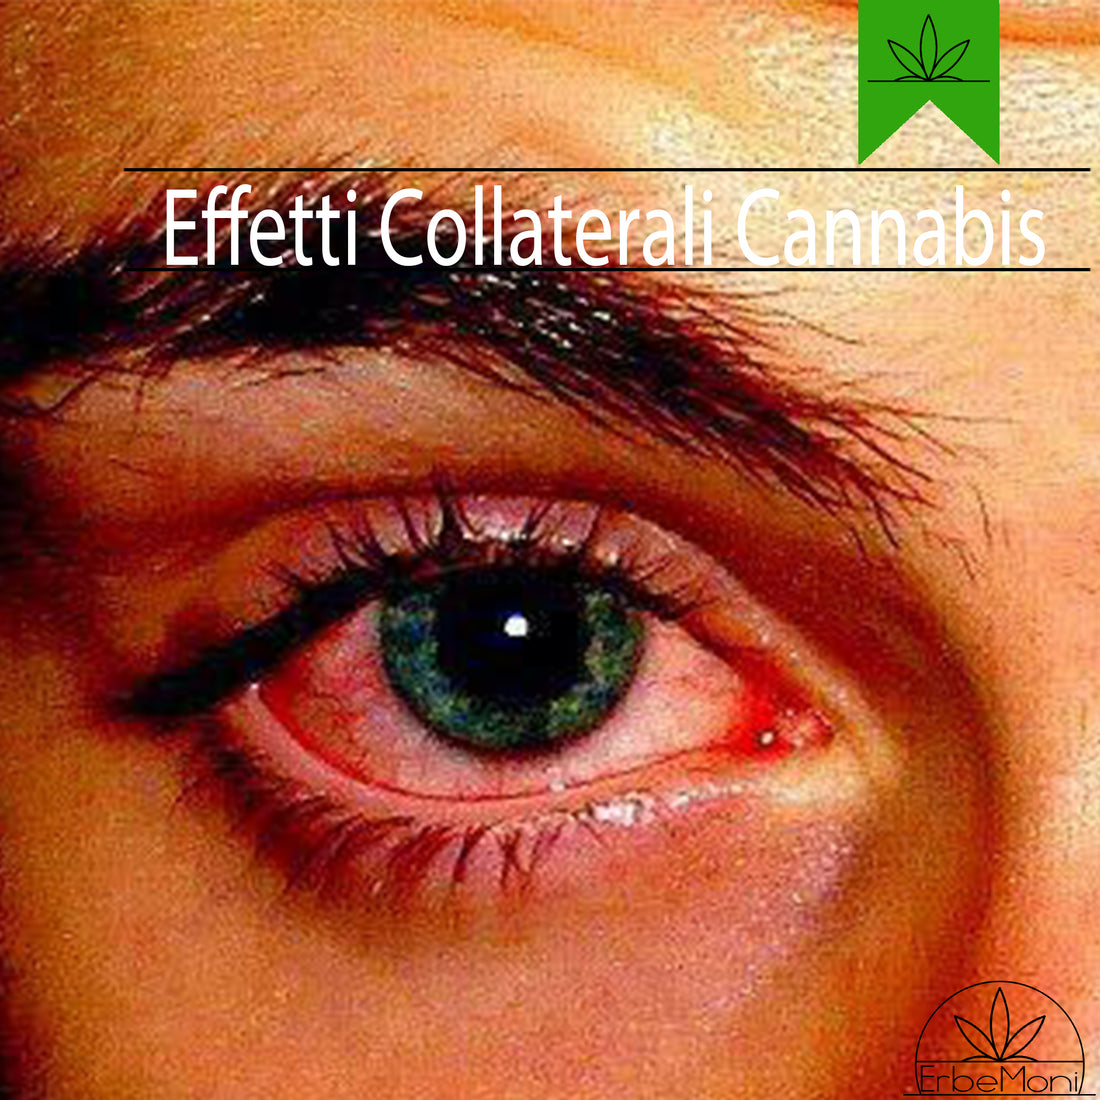 ErbeMoni-BlogMoni-Titold-Cannabis-Light-CBD-Effetti-Collaterali-ErbaLegale